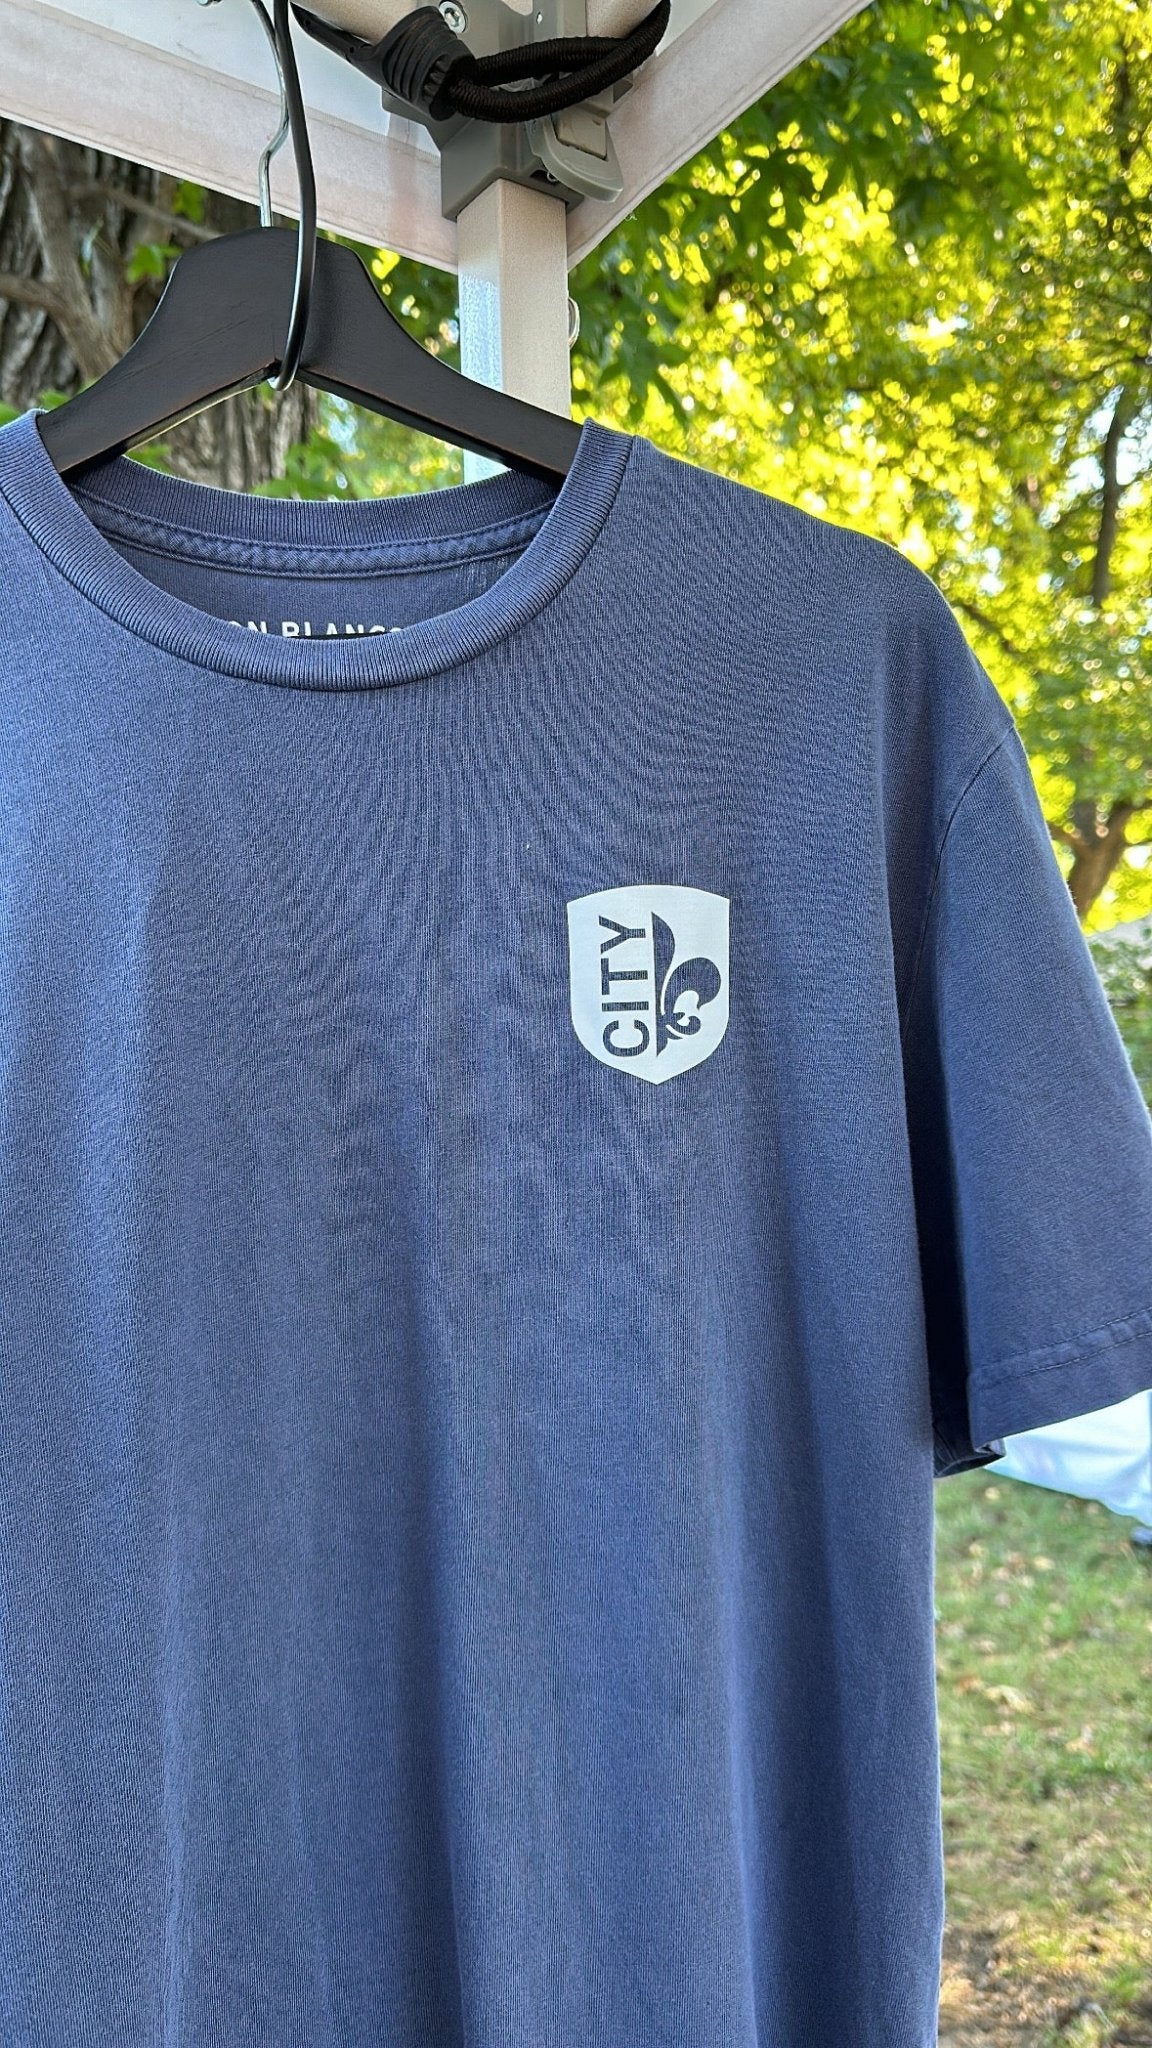 Vintage CITY Shirt (USA Made) - JON BLANCO